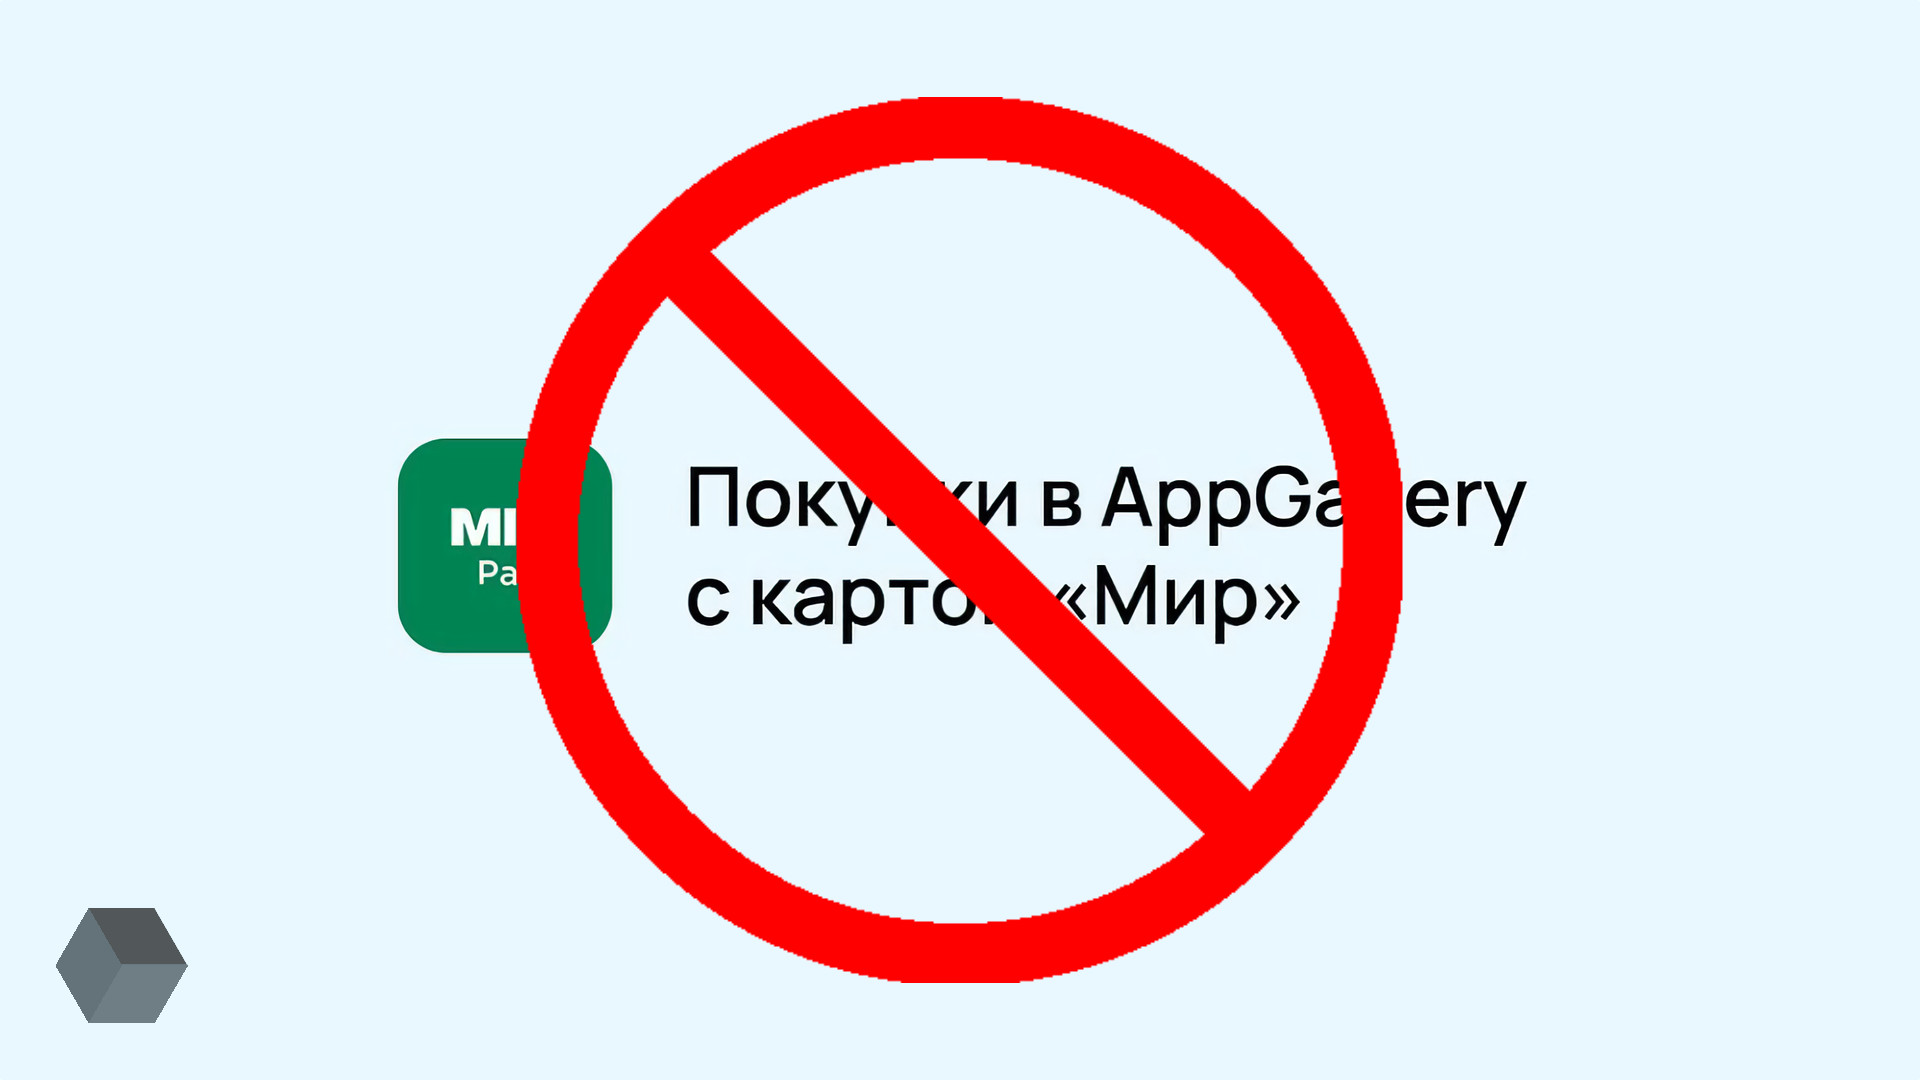 прием платежа для данного провайдера запрещен steam казахстан фото 85